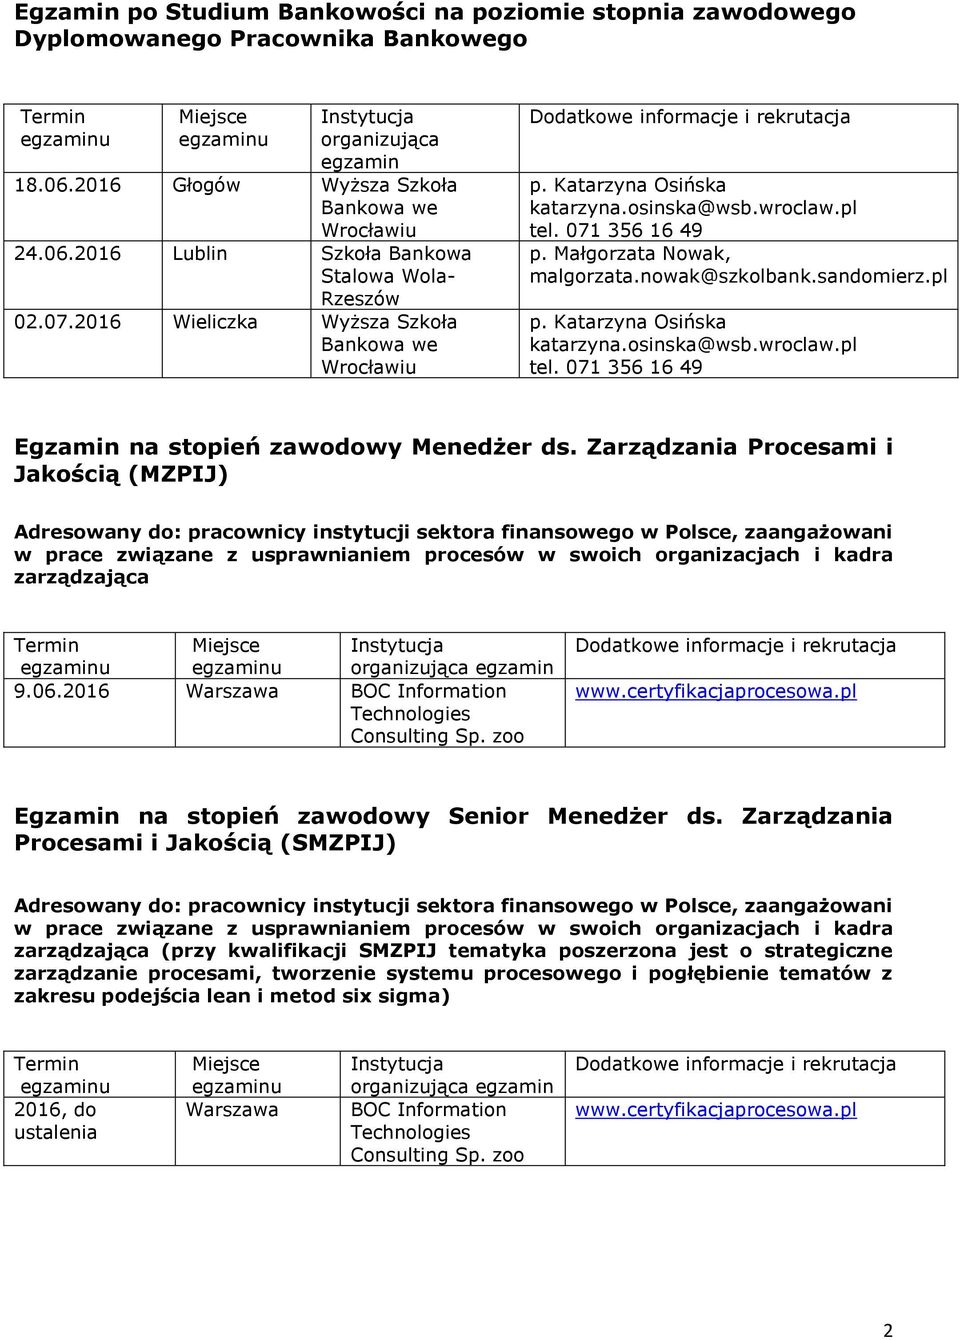 Zarządzania Procesami i Jakością (MZPIJ) Adresowany do: pracownicy instytucji sektora finansowego w Polsce, zaangażowani w prace związane z usprawnianiem procesów w swoich organizacjach i kadra